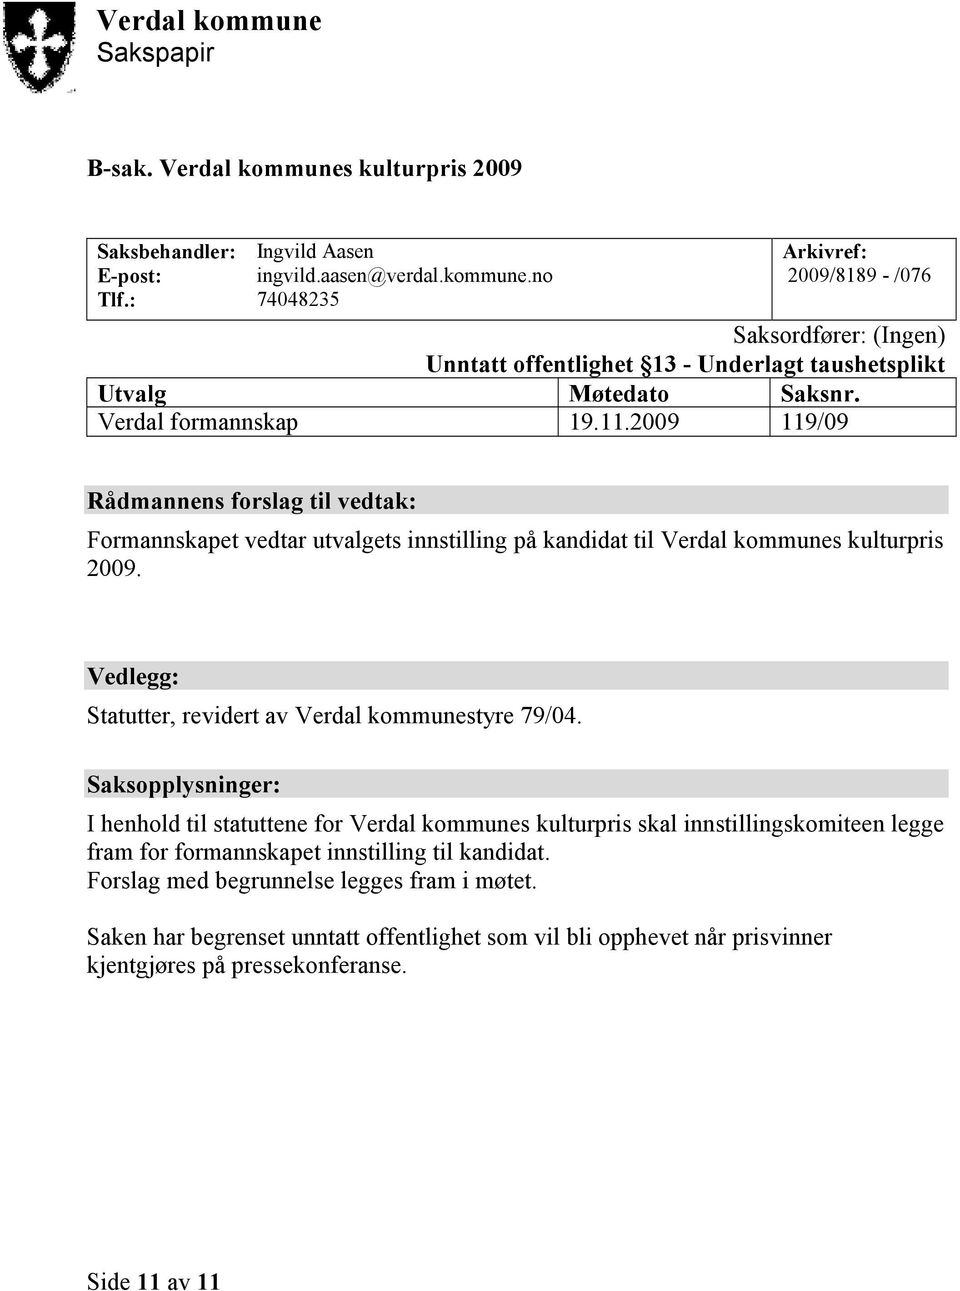 Vedlegg: Statutter, revidert av Verdal kommunestyre 79/04.